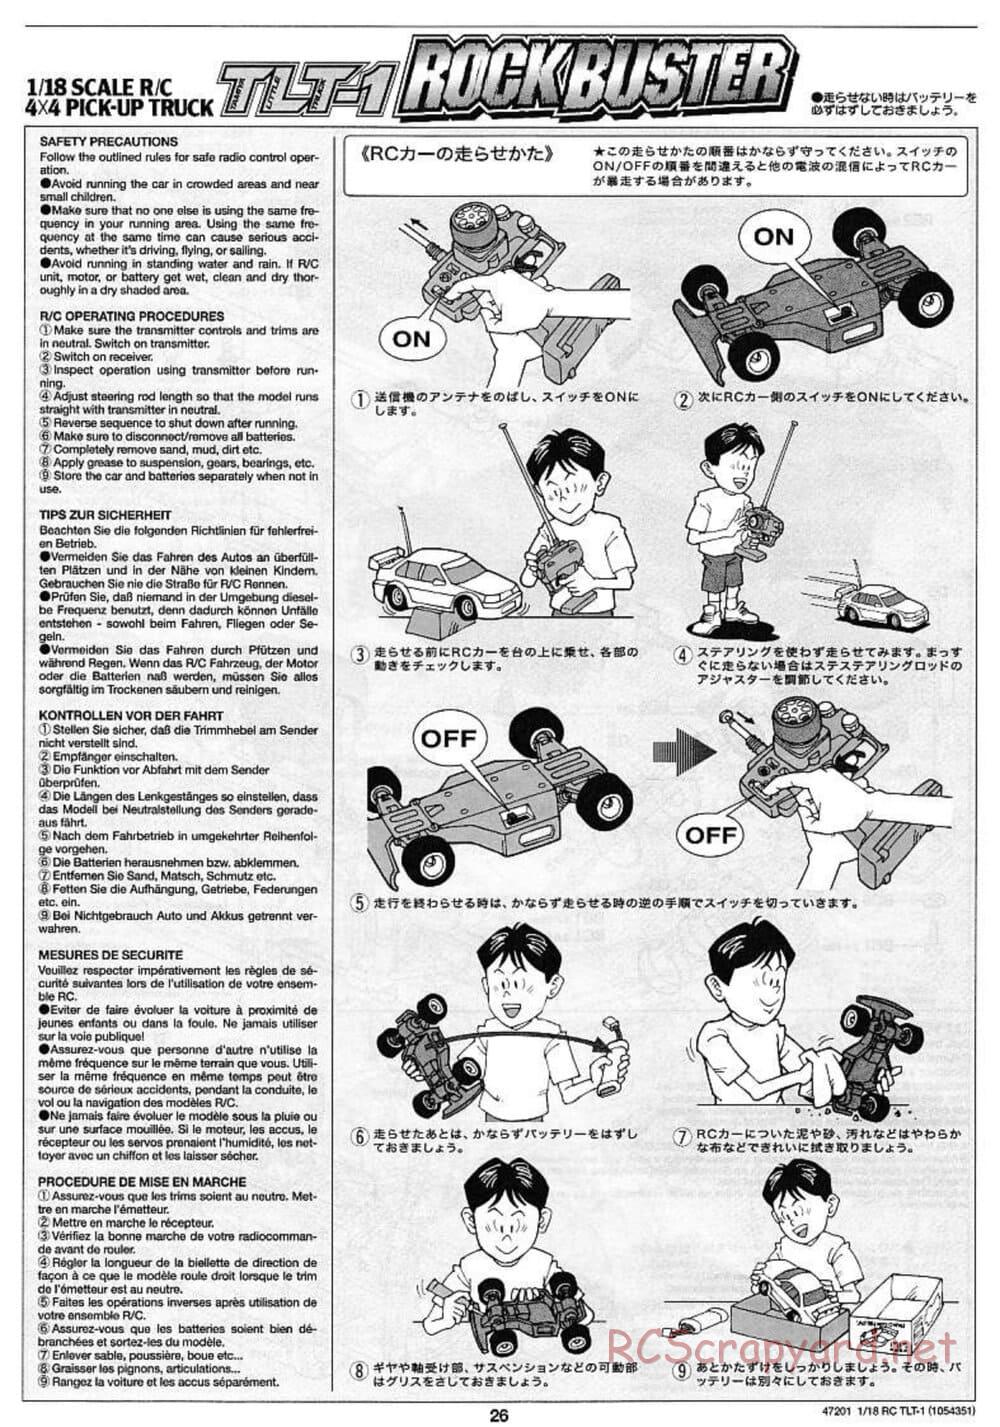 Tamiya - Rock Buster - TLT-1 Chassis - Manual - Page 26